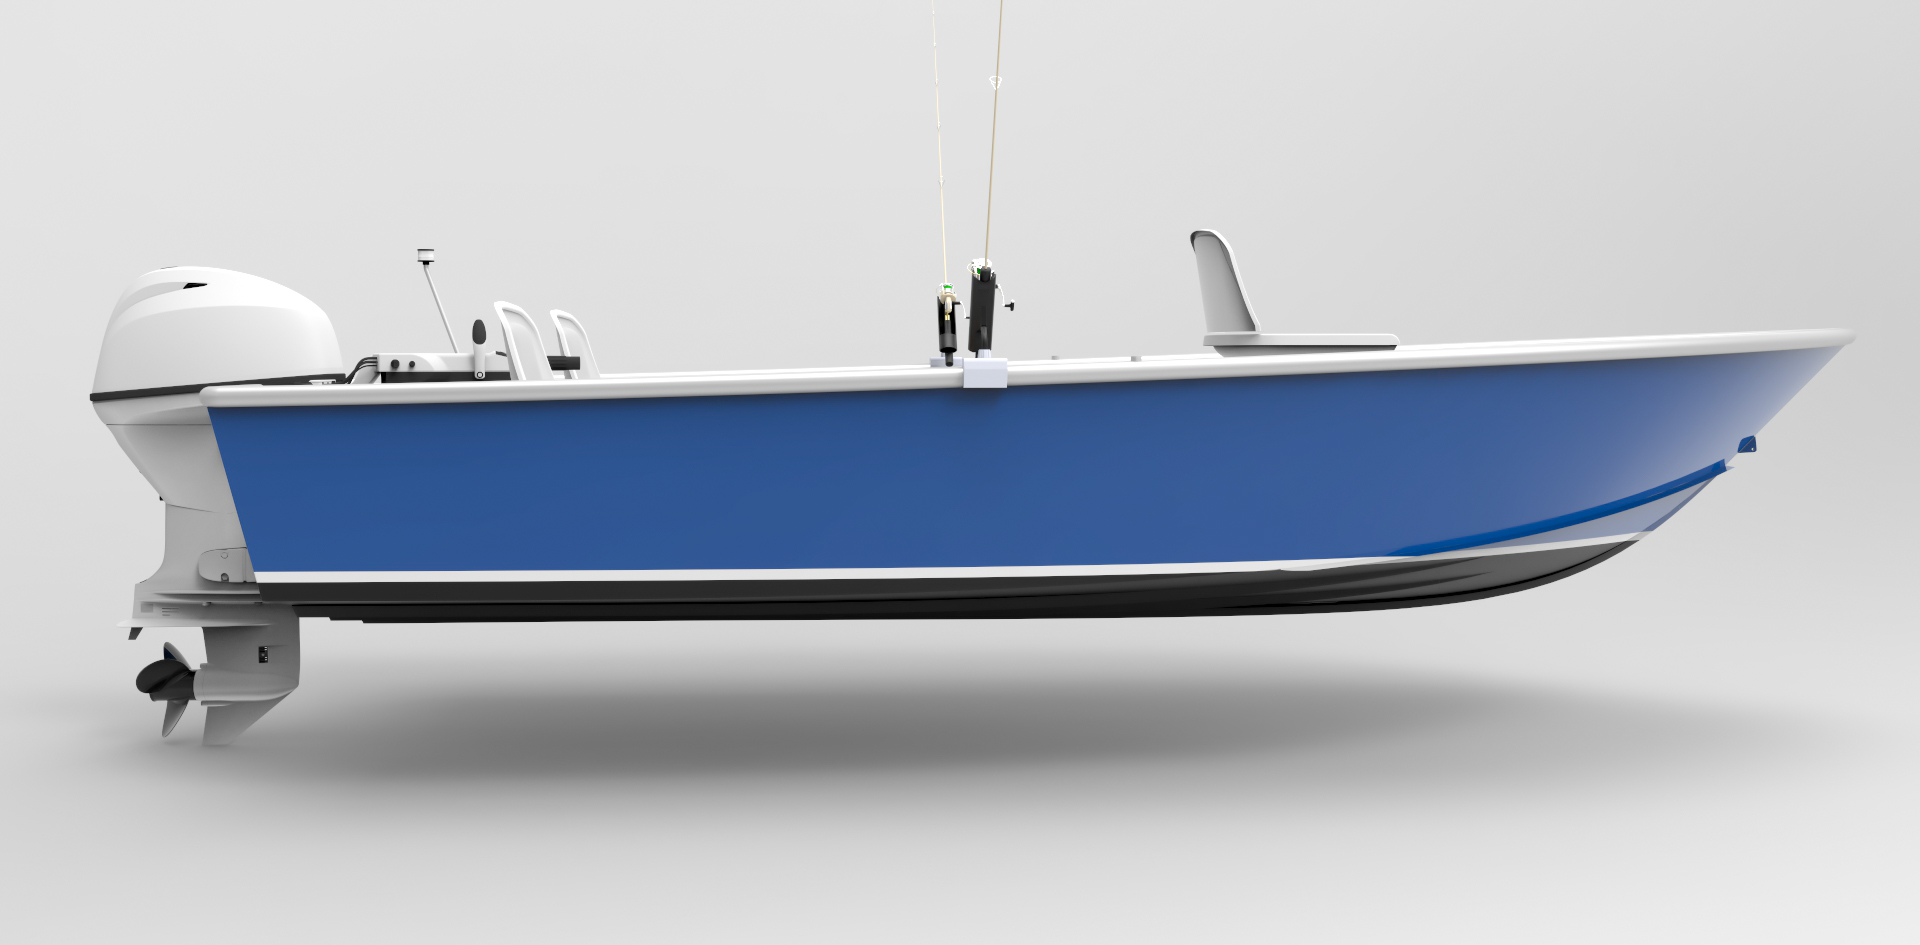 14 Foot (4.3m) Skiff - Sport Fish - Metal Boat Kits. 